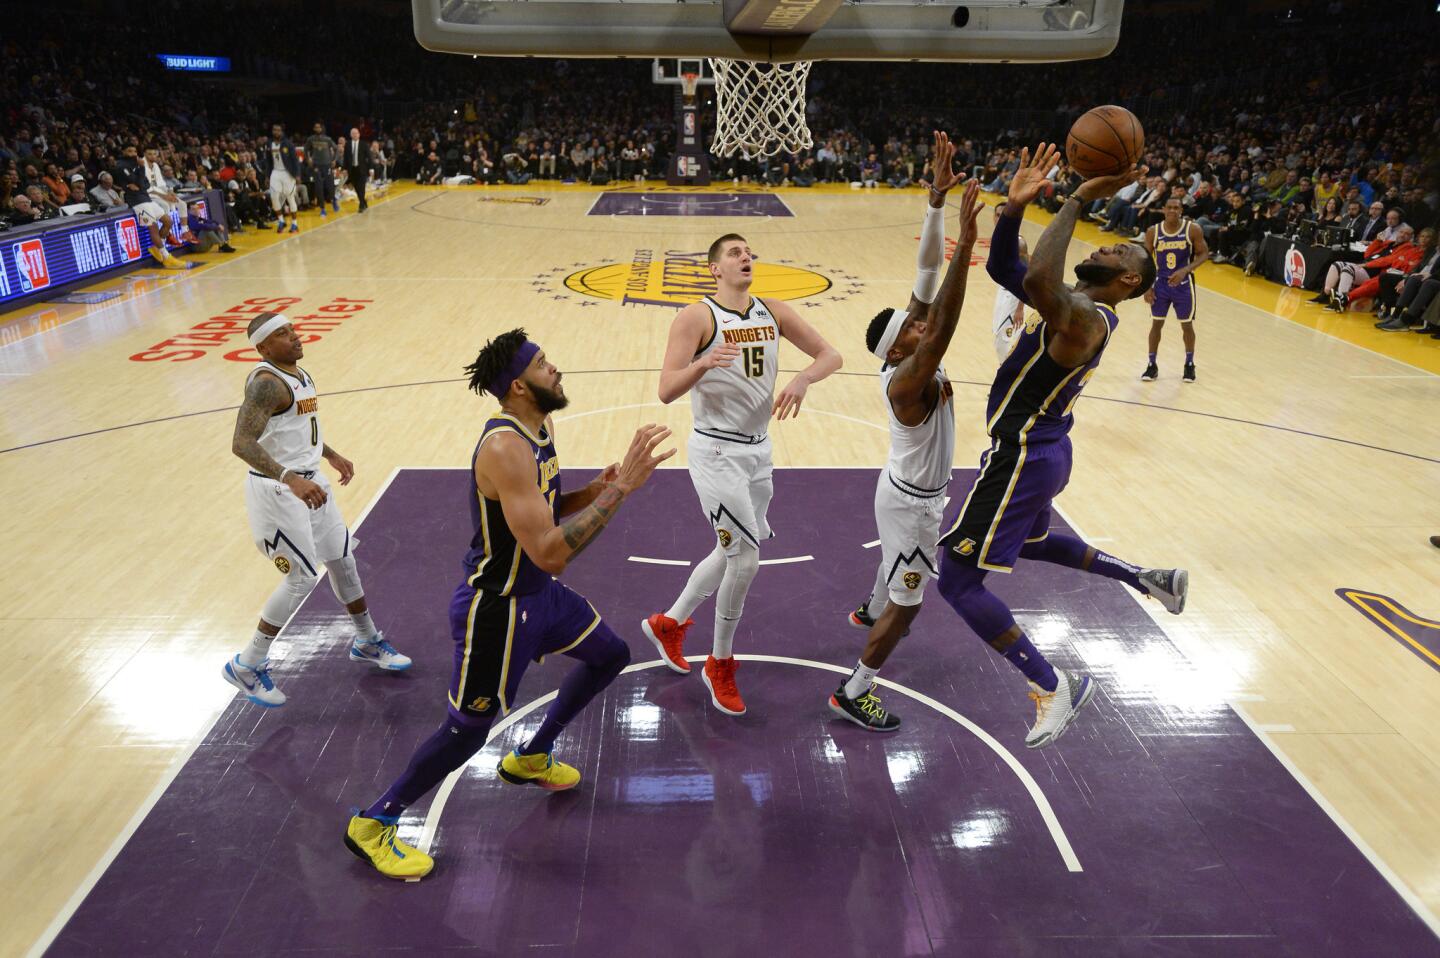 Denver Nuggets v Los Angeles Lakers